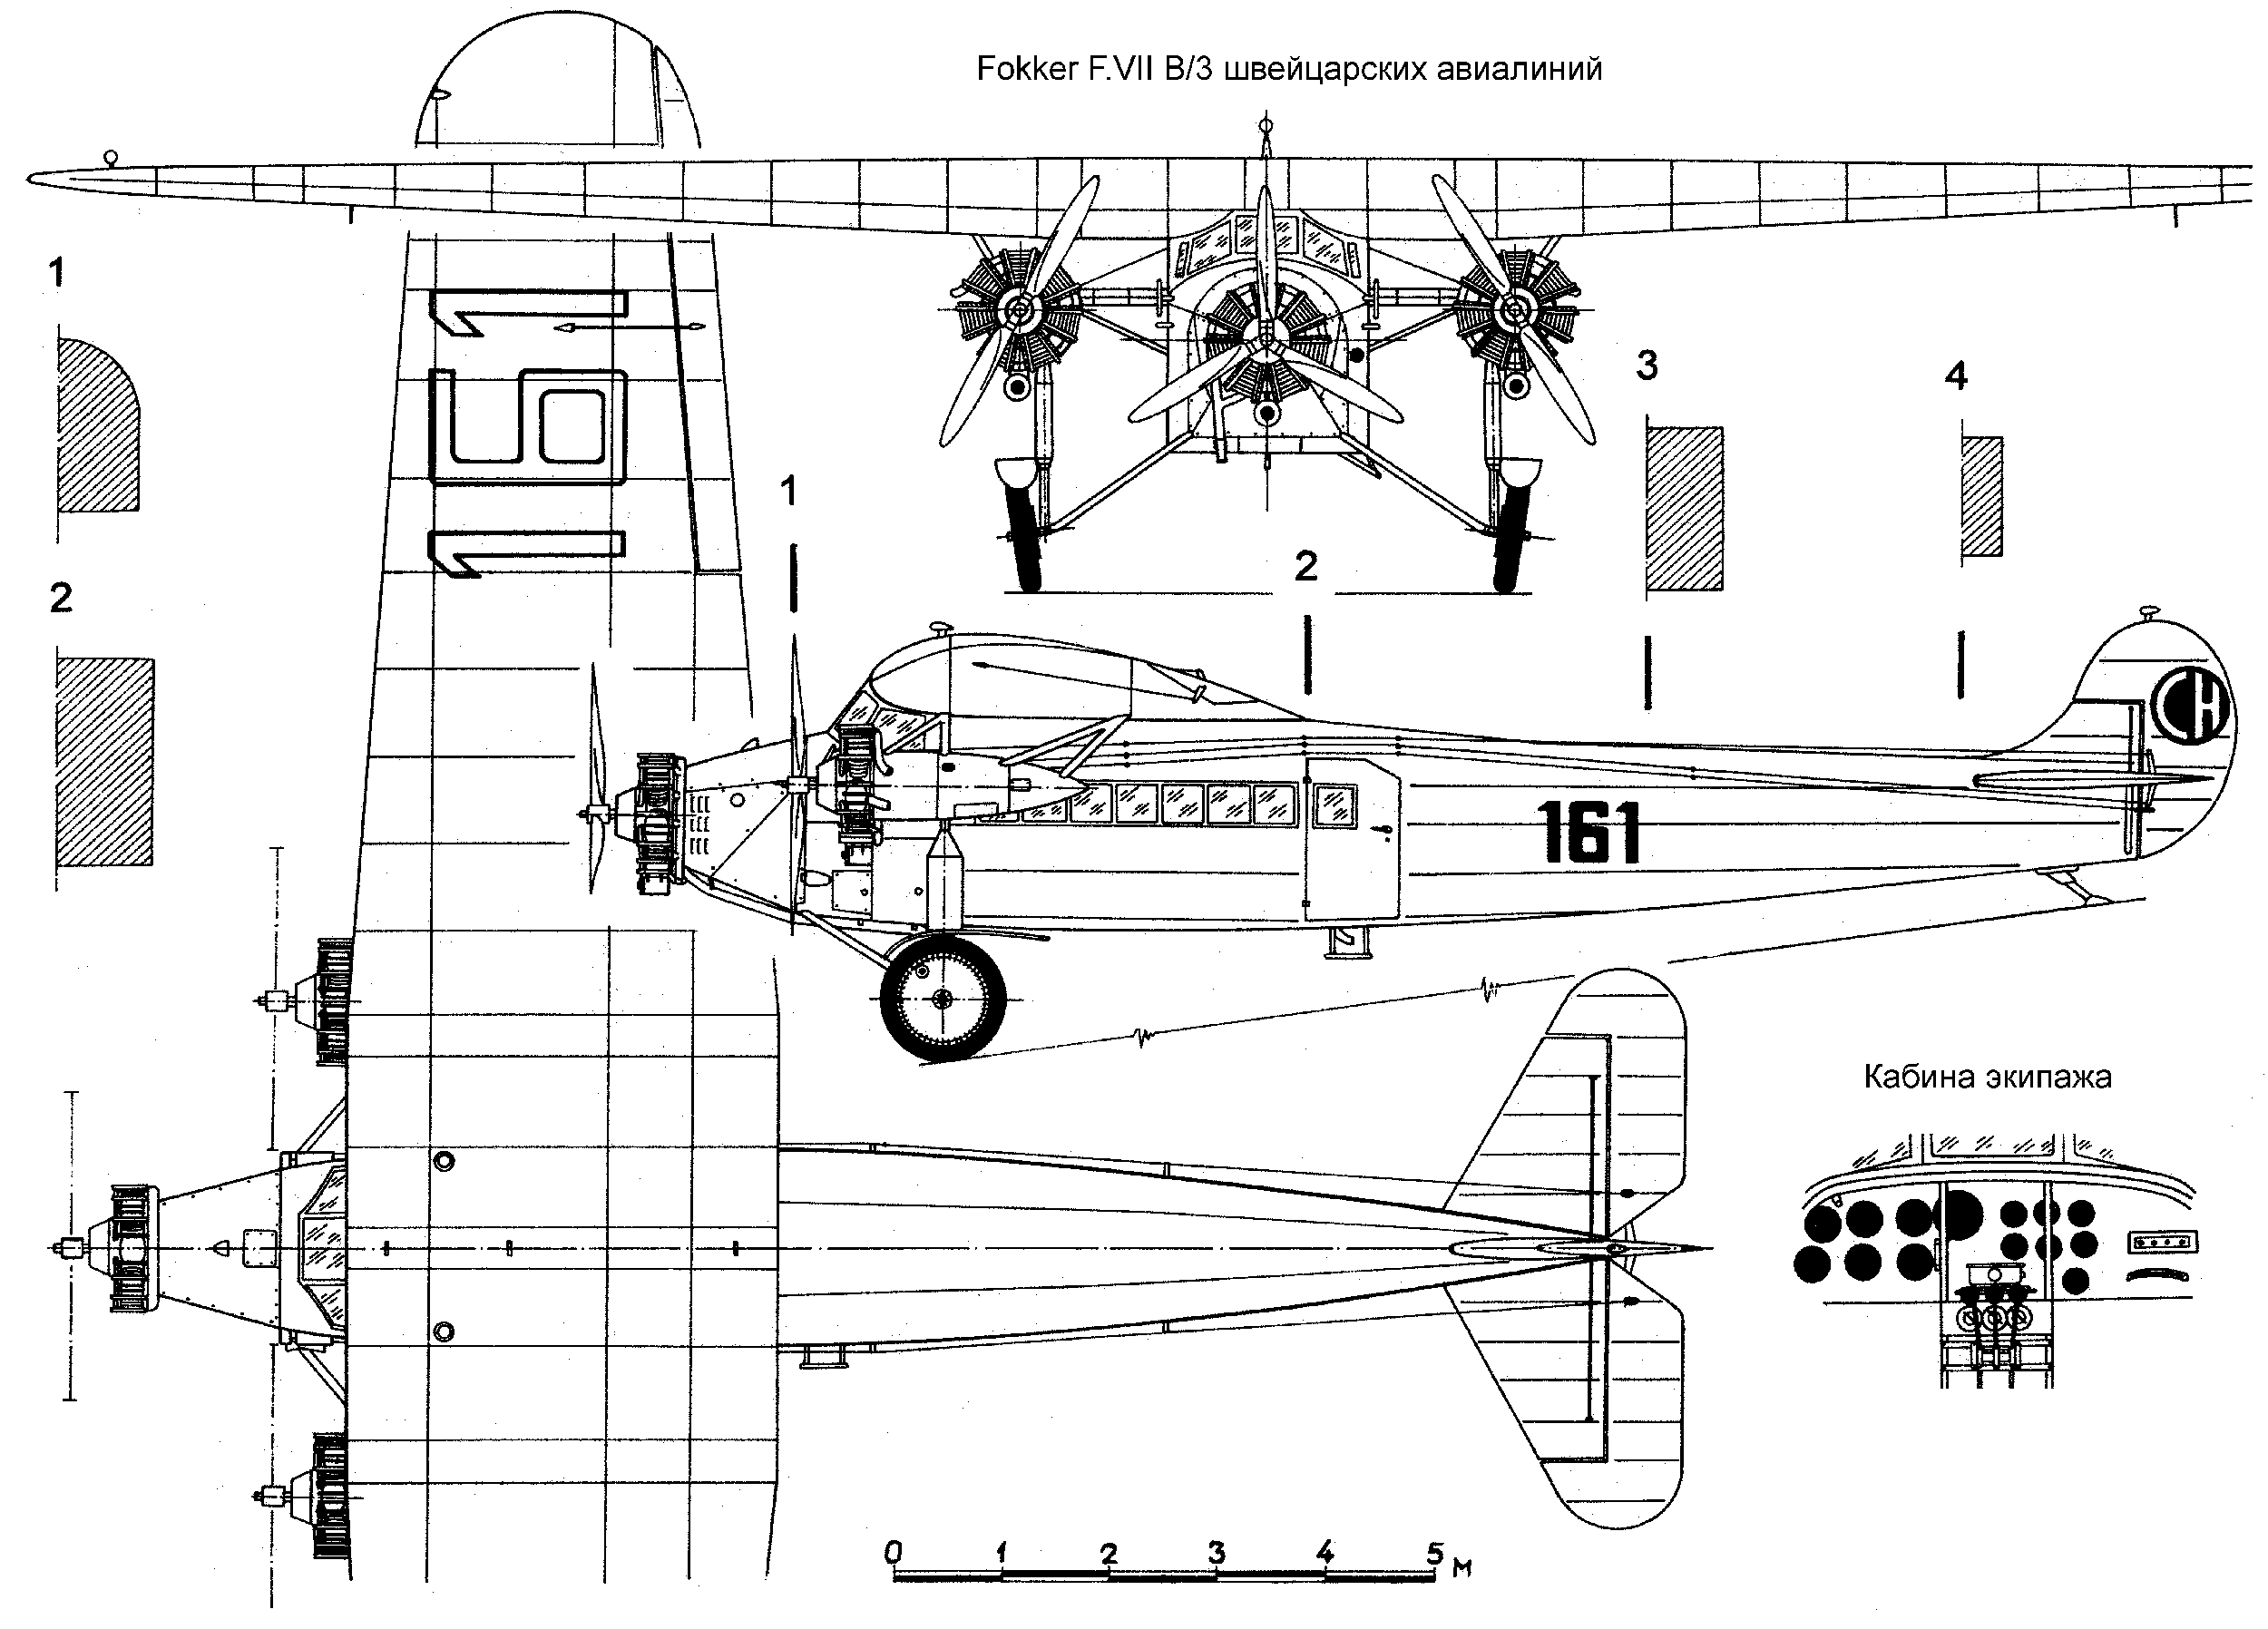 Fokker F.VII blueprint